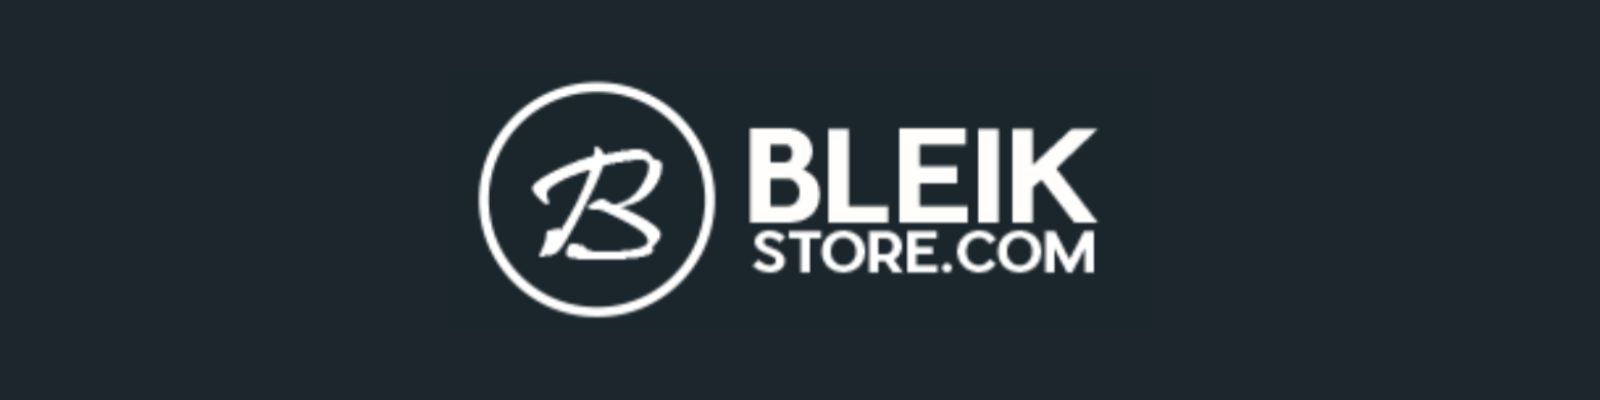 Bleik Store é confiável? Não compre antes de Ler!